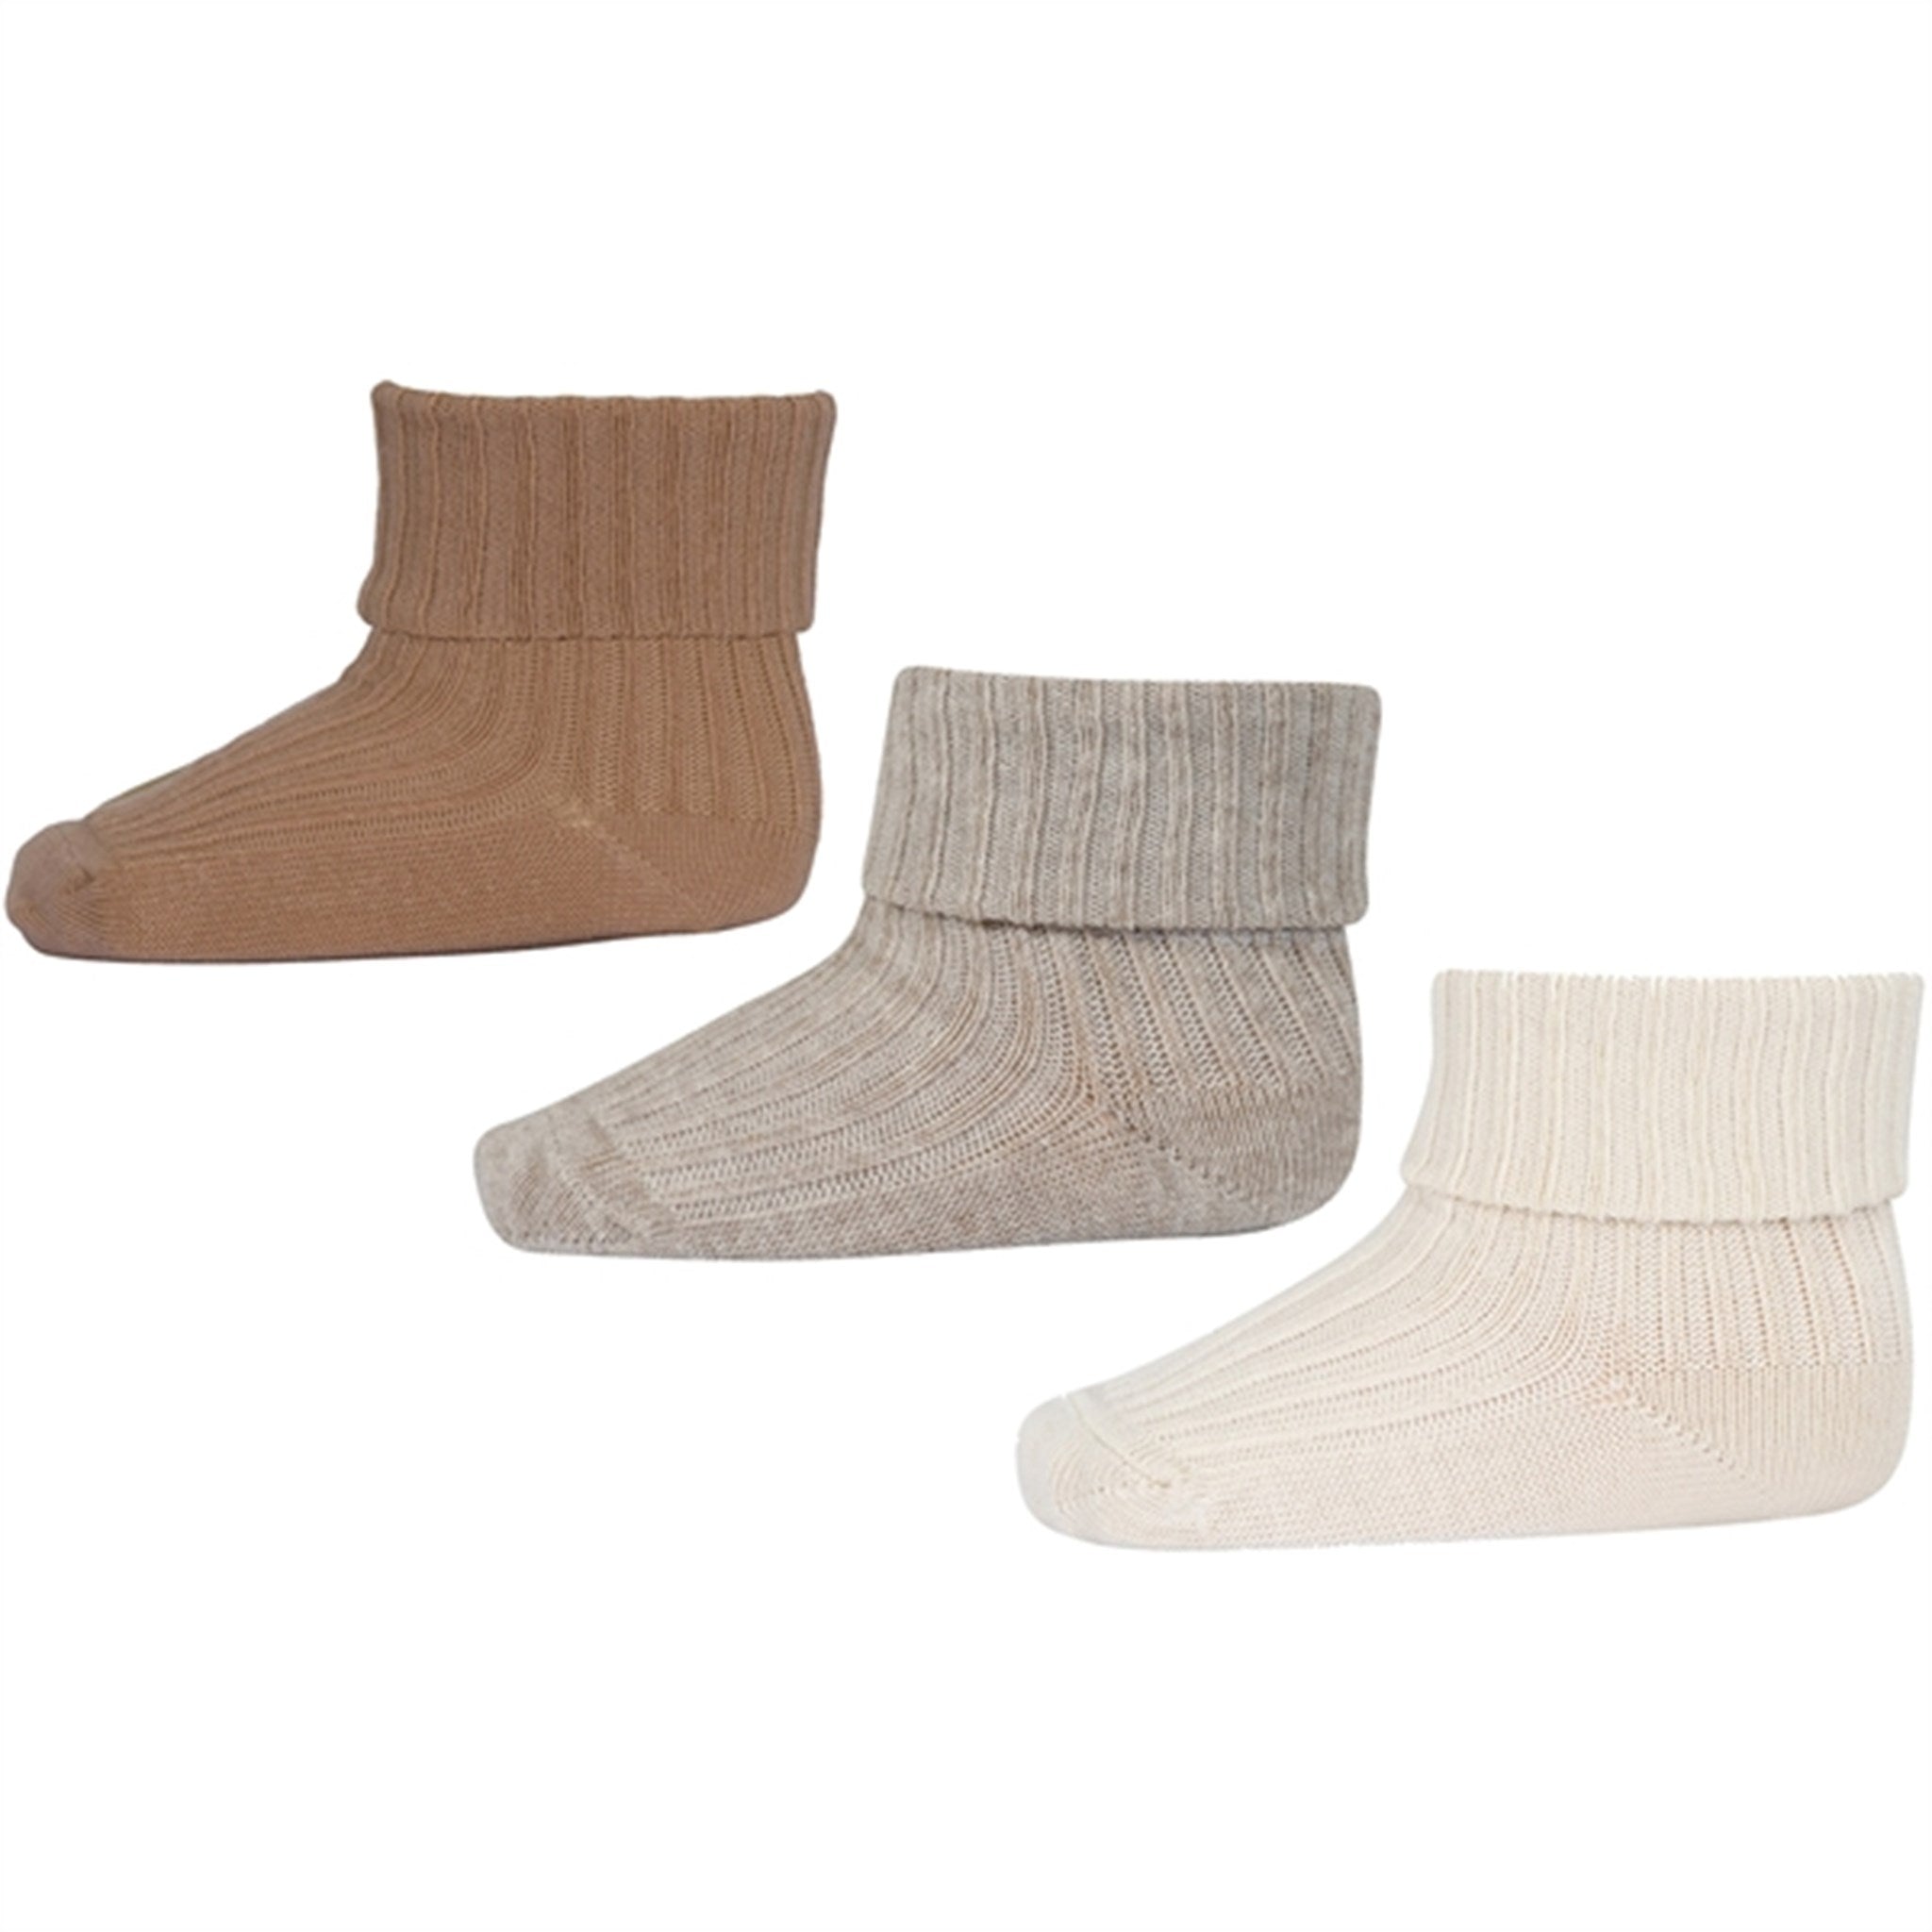 5-pack Non-slip Socks - Beige melange/brown - Kids